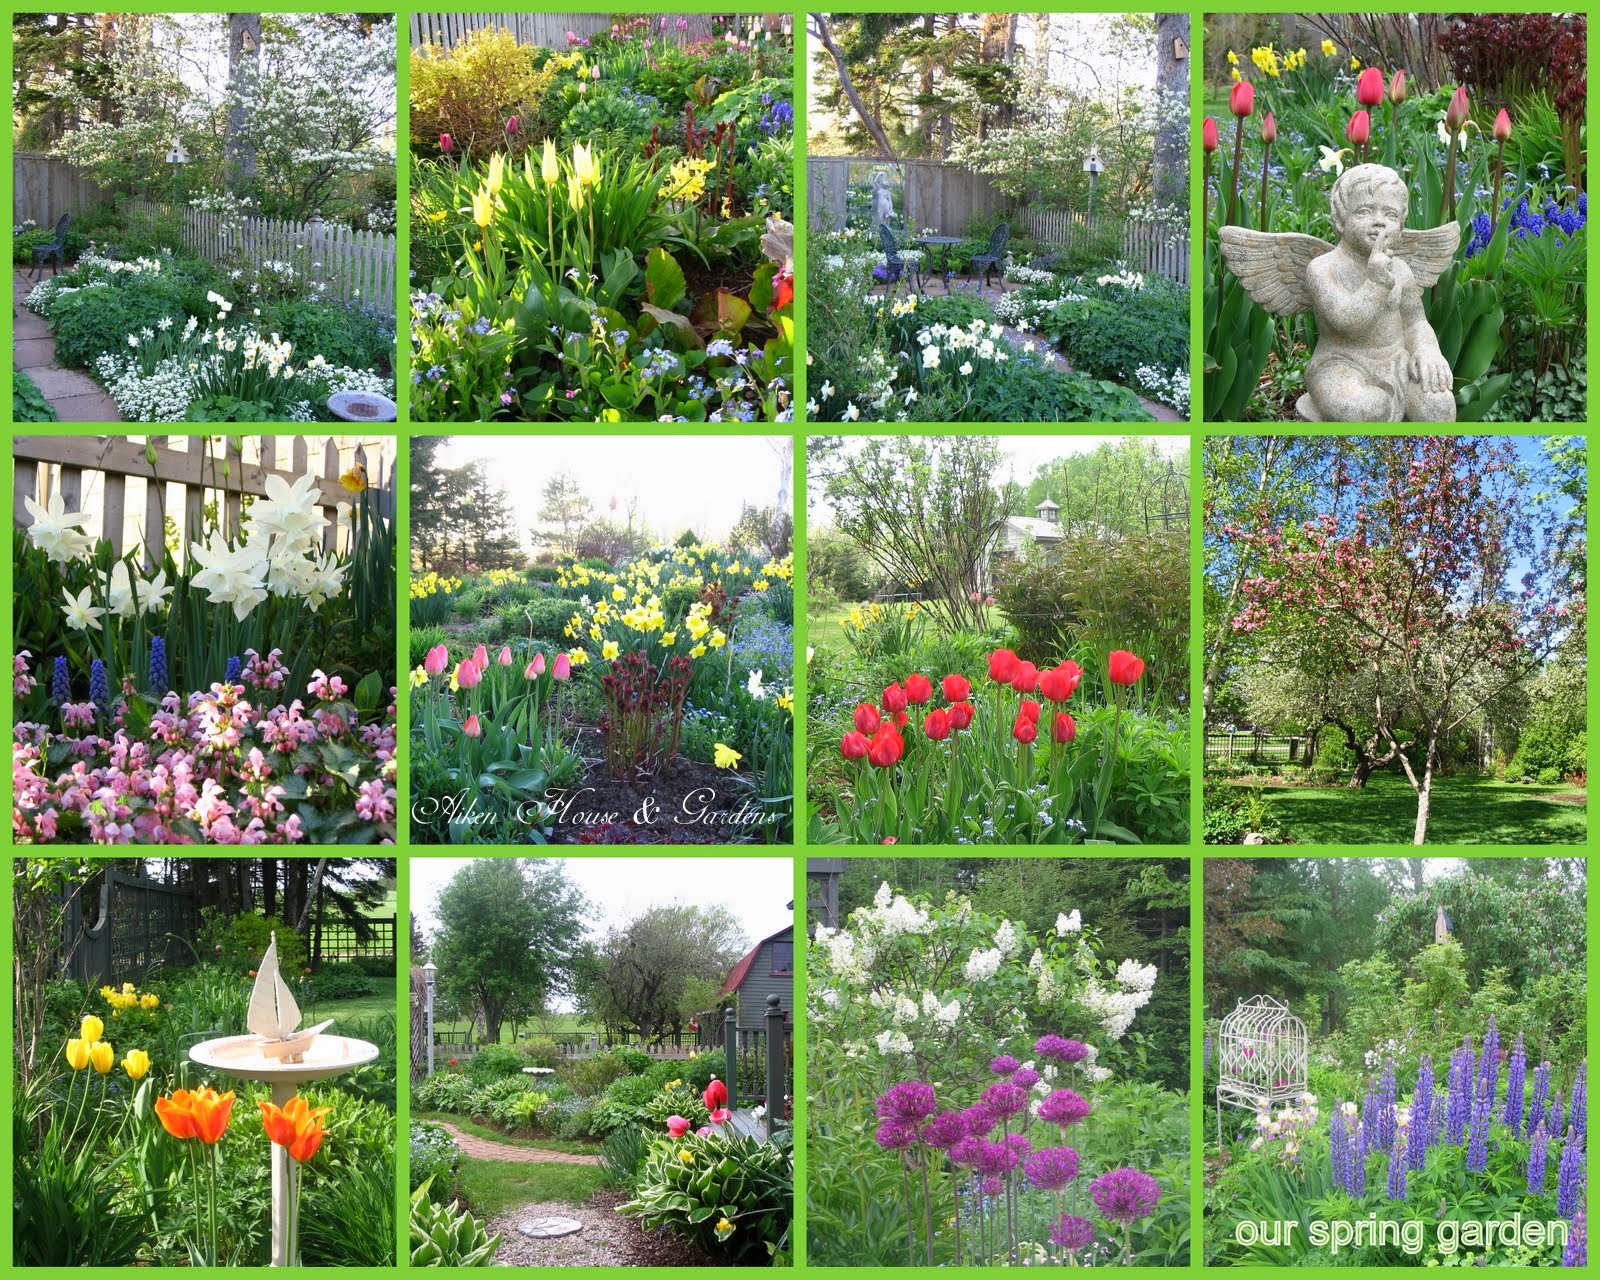 Garden Design журнал. Aiken House and Gardens фото. Aiken House and Gardens пионы фото. Springtime Garden журнал. This our garden